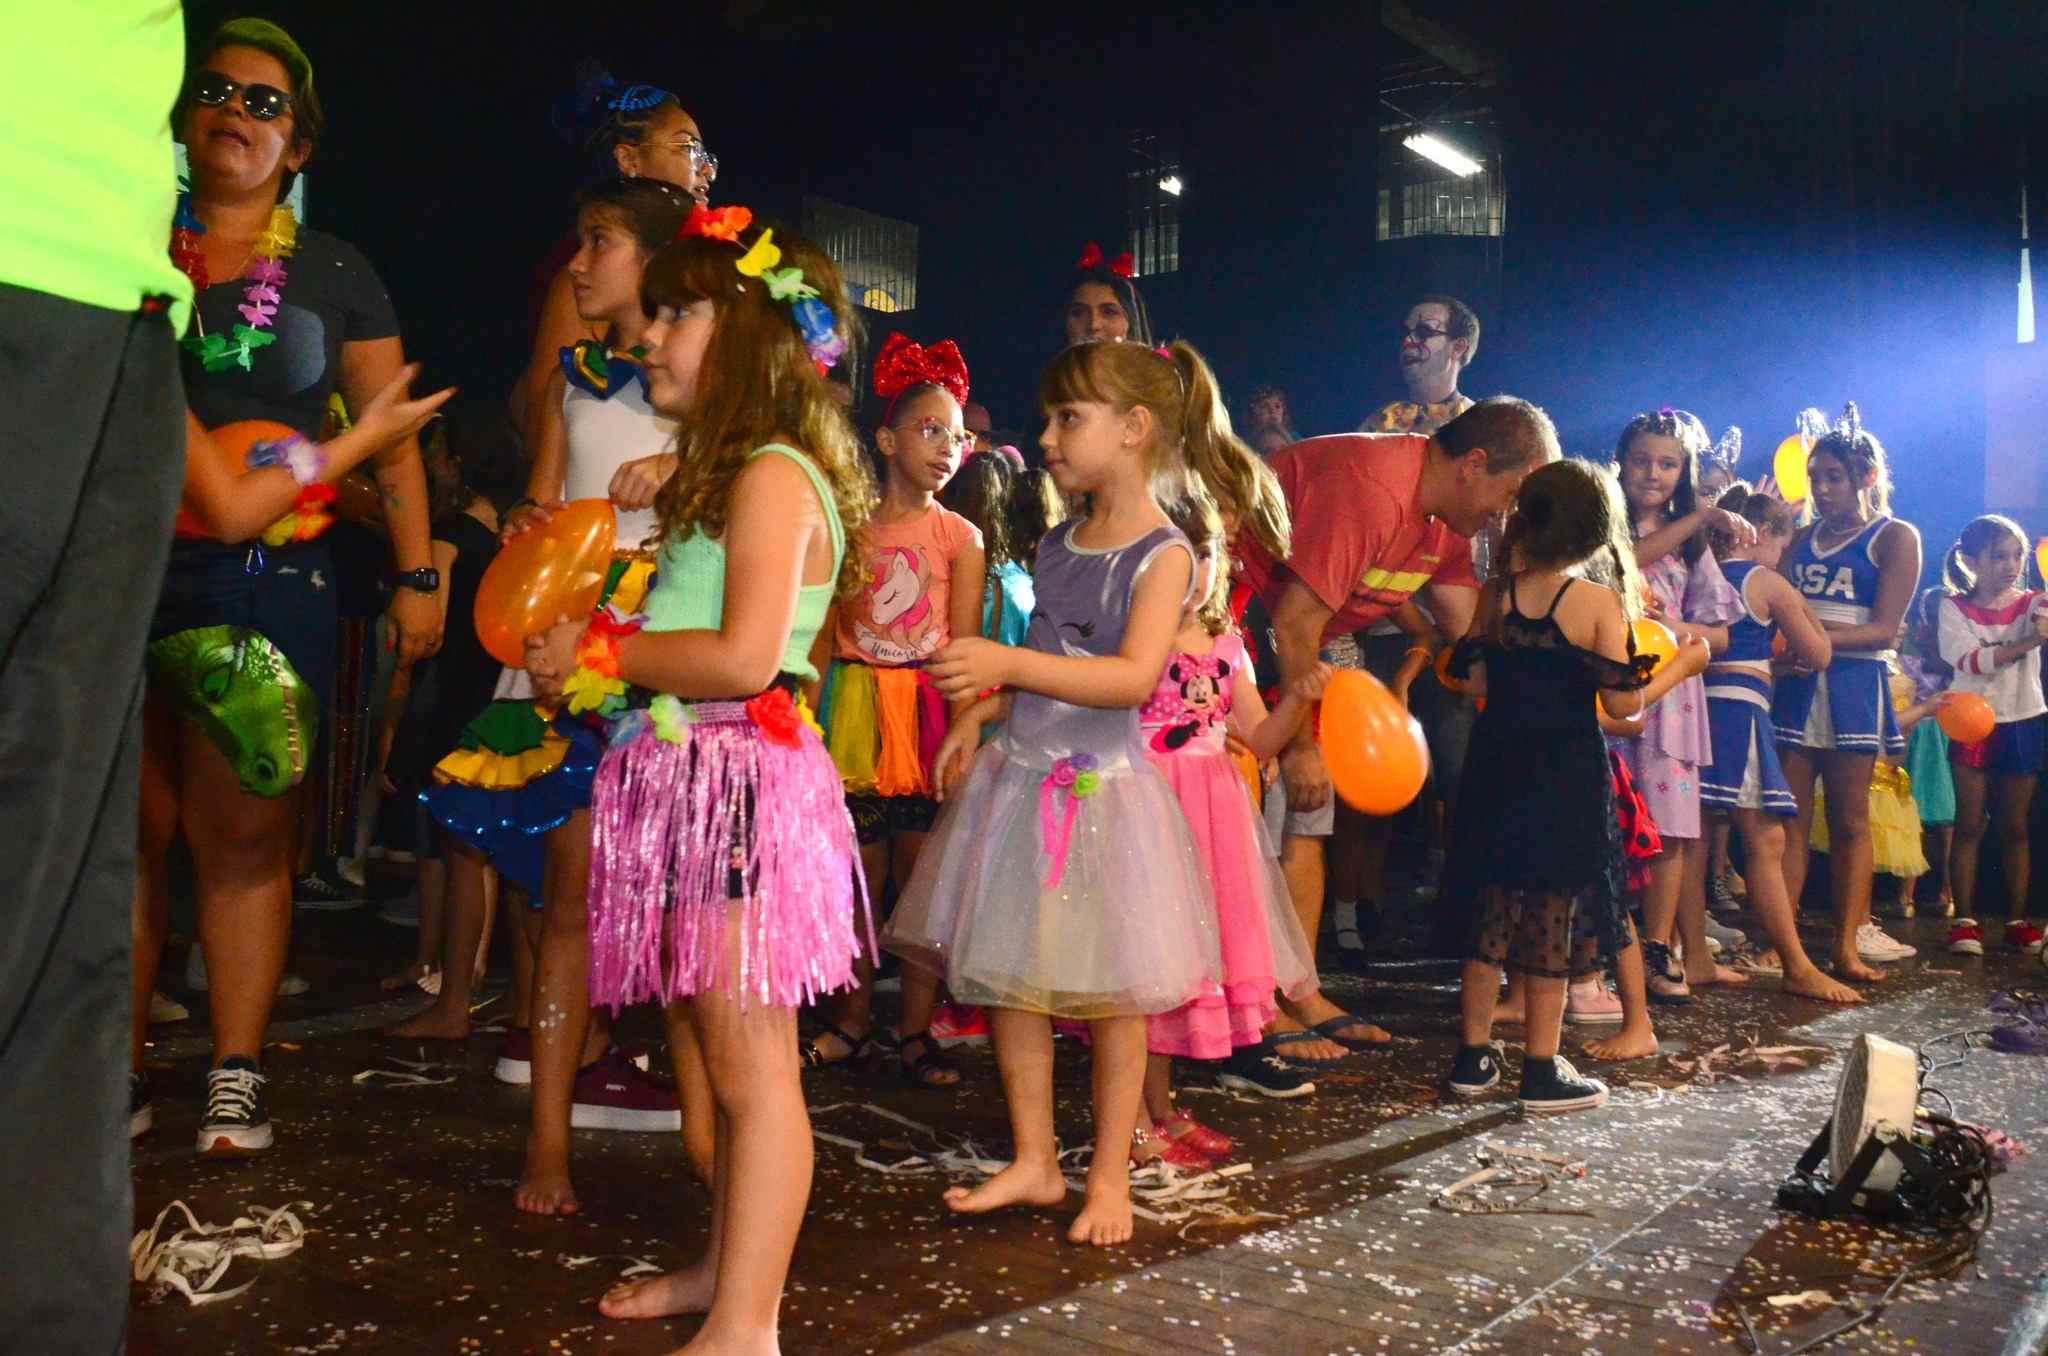 Clube Esperia promove “Festa à Fantasia na Folia” com atrações voltadas para crianças